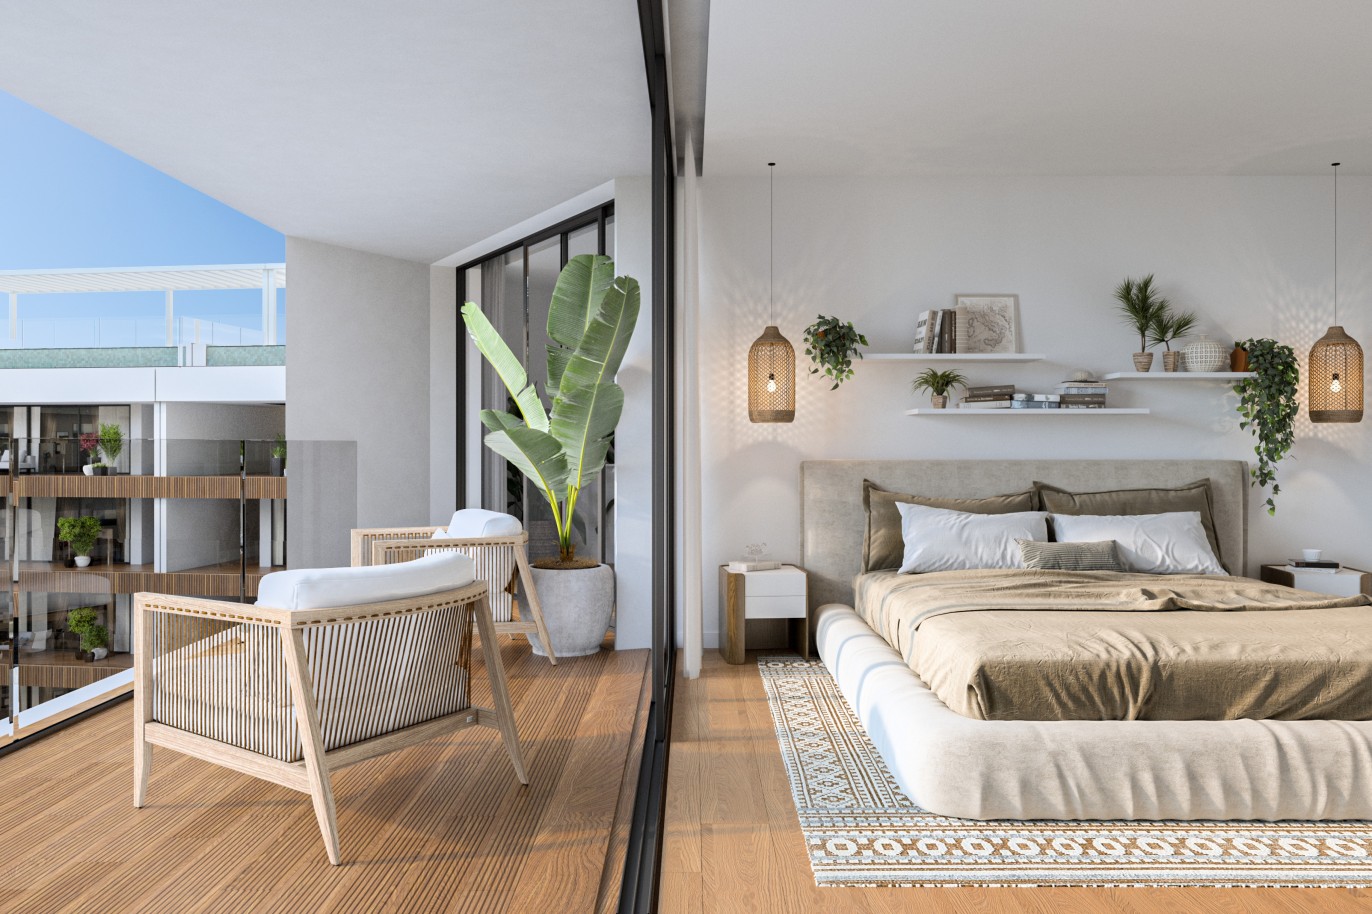 Appartements neufs avec vue sur mer, 1, 2 & 3 chambres, à vendre à Olhão, Algarve_244596